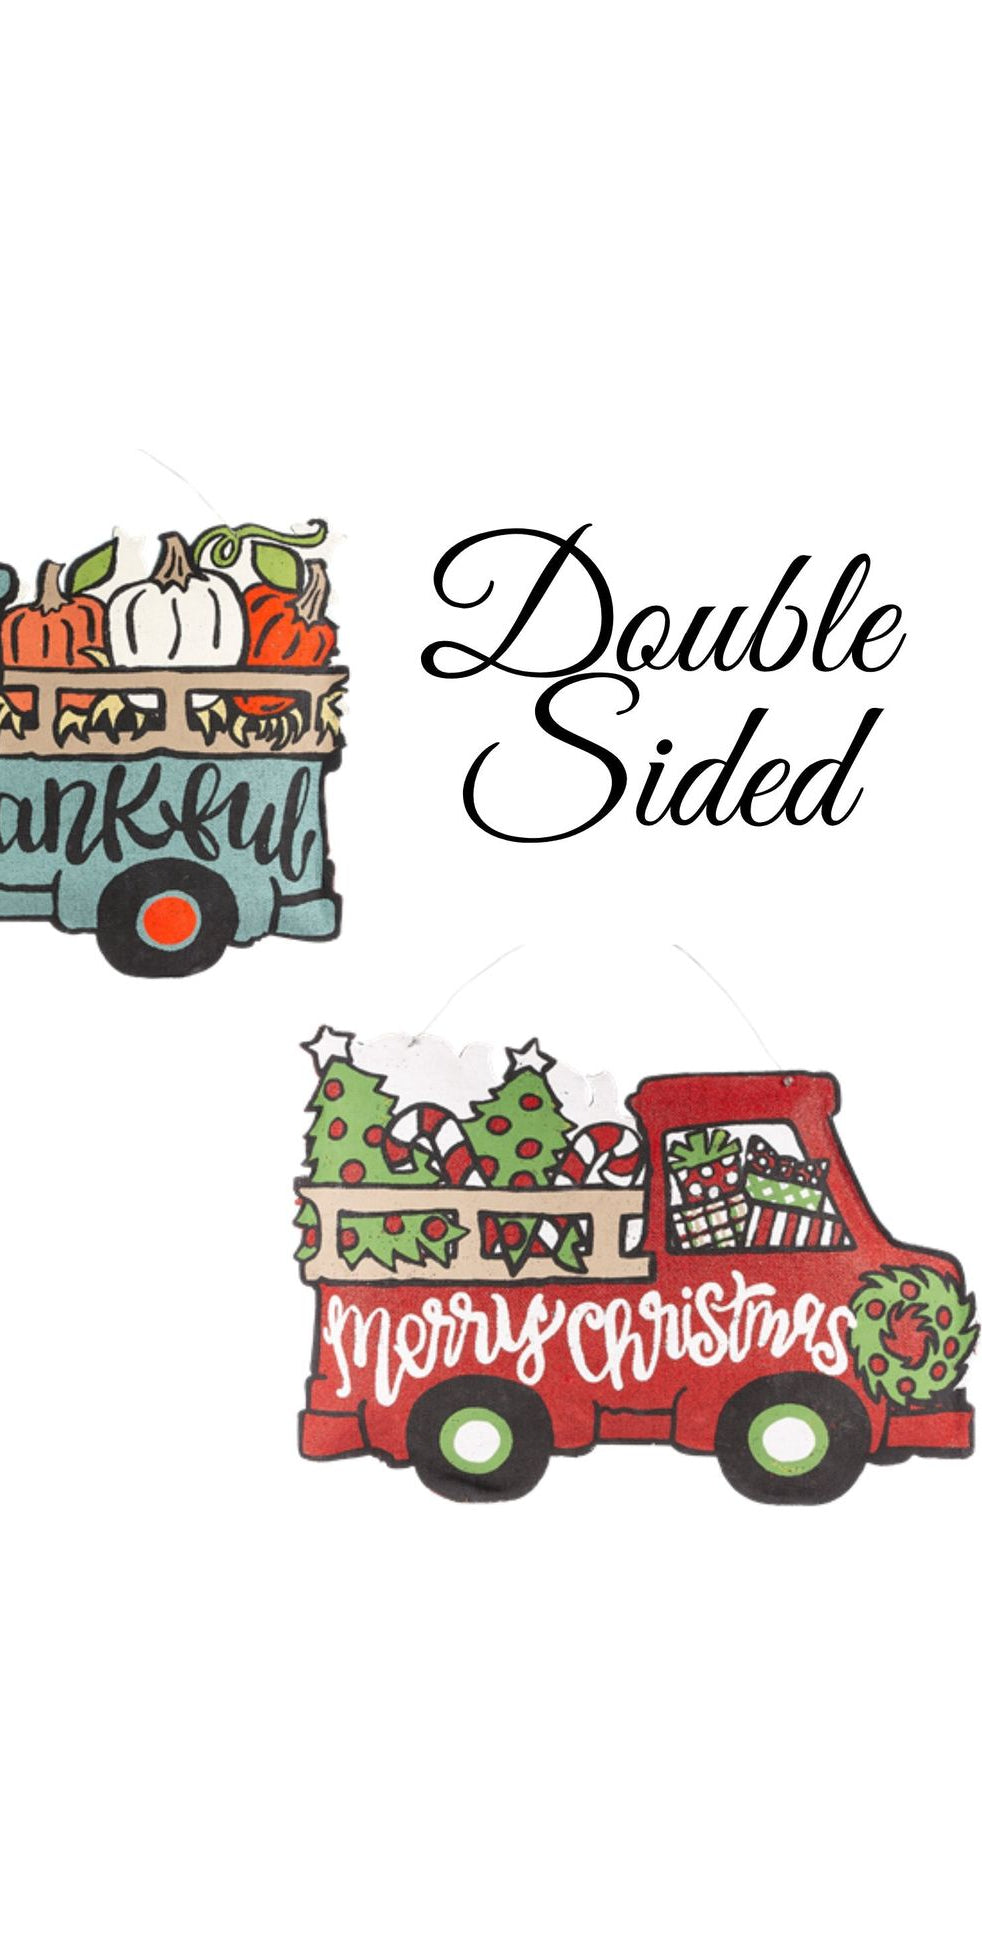 26" So Thankful/Merry Christmas Reversible Truck Burlee - Michelle's aDOORable Creations - Door Hanger